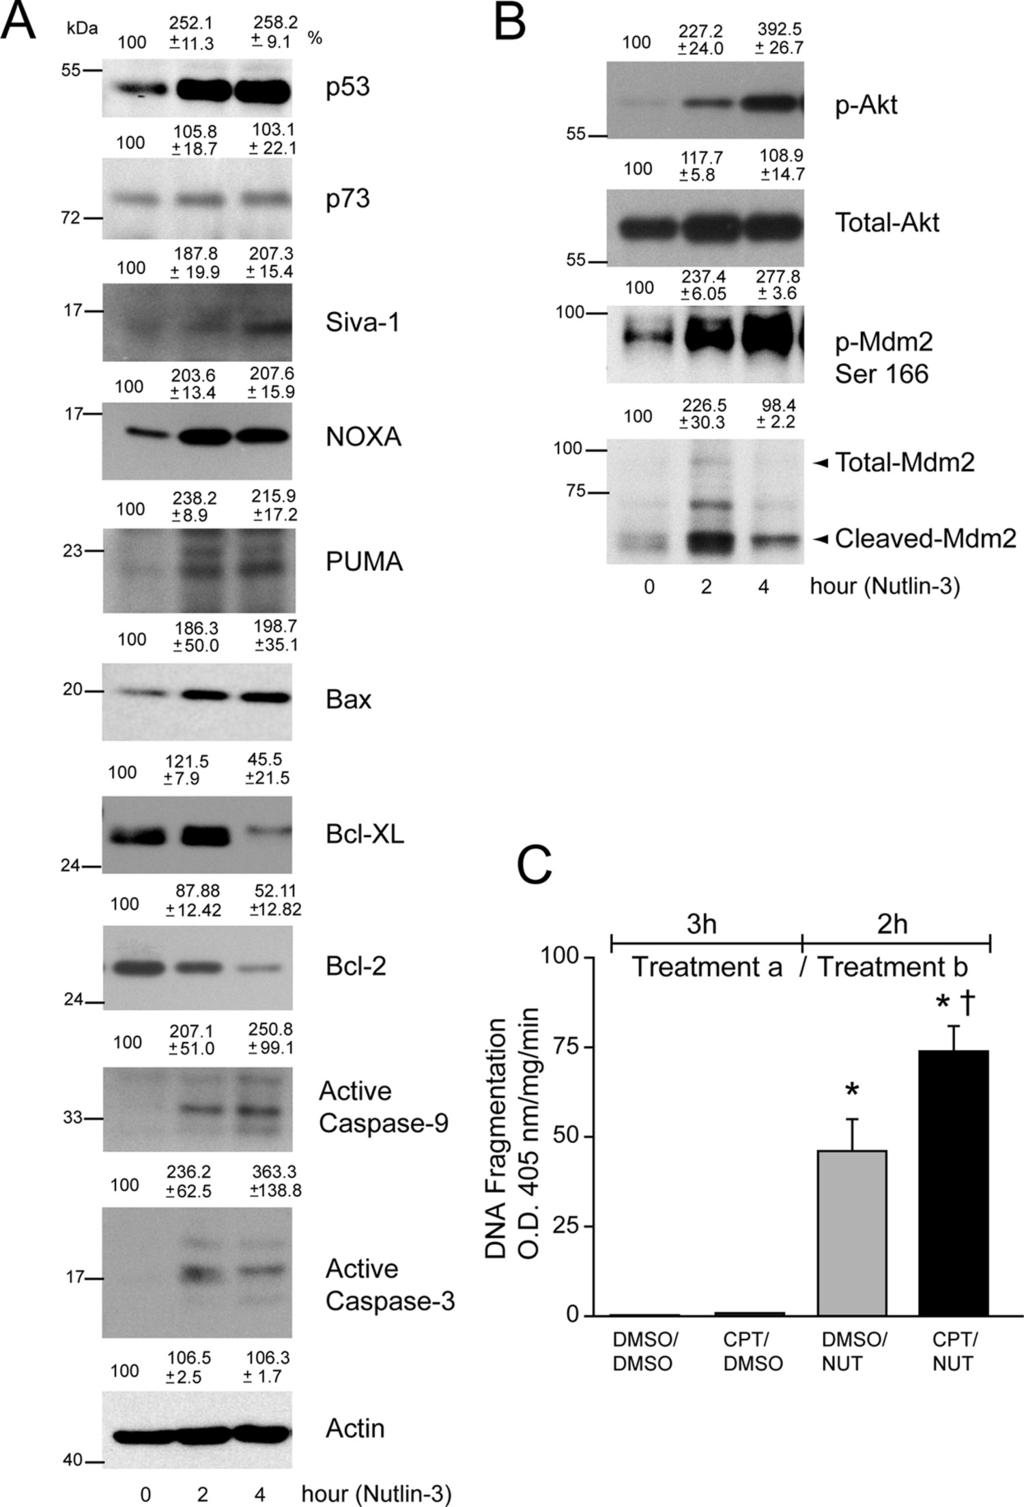 IOVS, May 2011, Vol. 52, No. 6 Nutlin-3 Induces Apoptosis in RPE Cells 3375 FIGURE 6. Nutlin-3 activates p53 signaling in ARPE-19 cells.